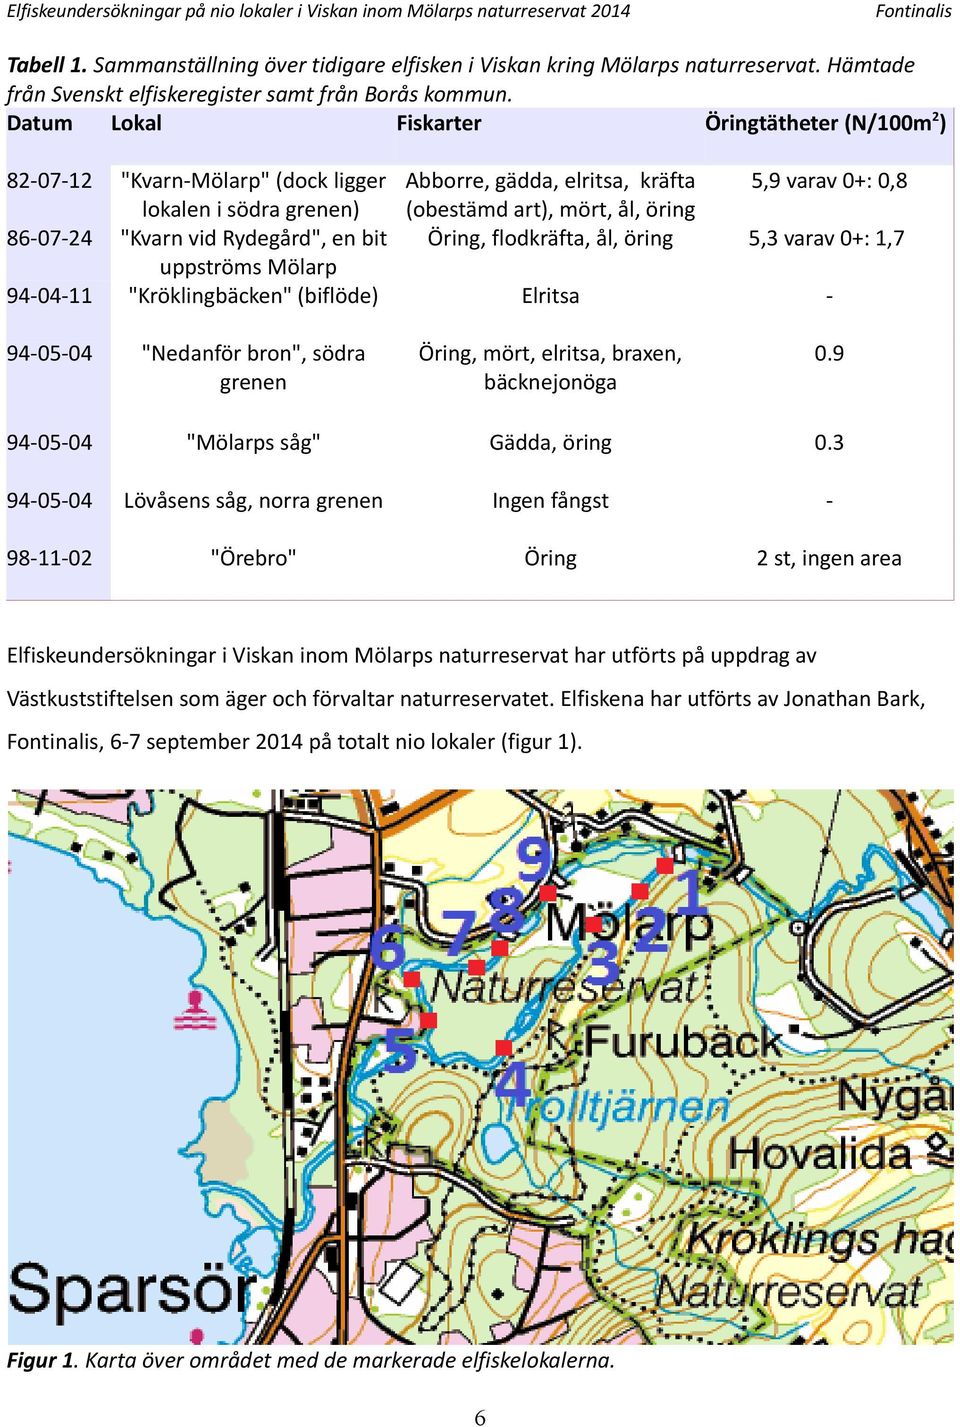 Datum Lokal Fiskarter Öringtätheter (N/m) 8-7- 86-7- 9-- "Kvarn-Mölarp" (dock ligger Abborre, gädda, elritsa, kräfta lokalen i södra grenen) (obestämd art), mört, ål, öring "Kvarn vid Rydegård", en